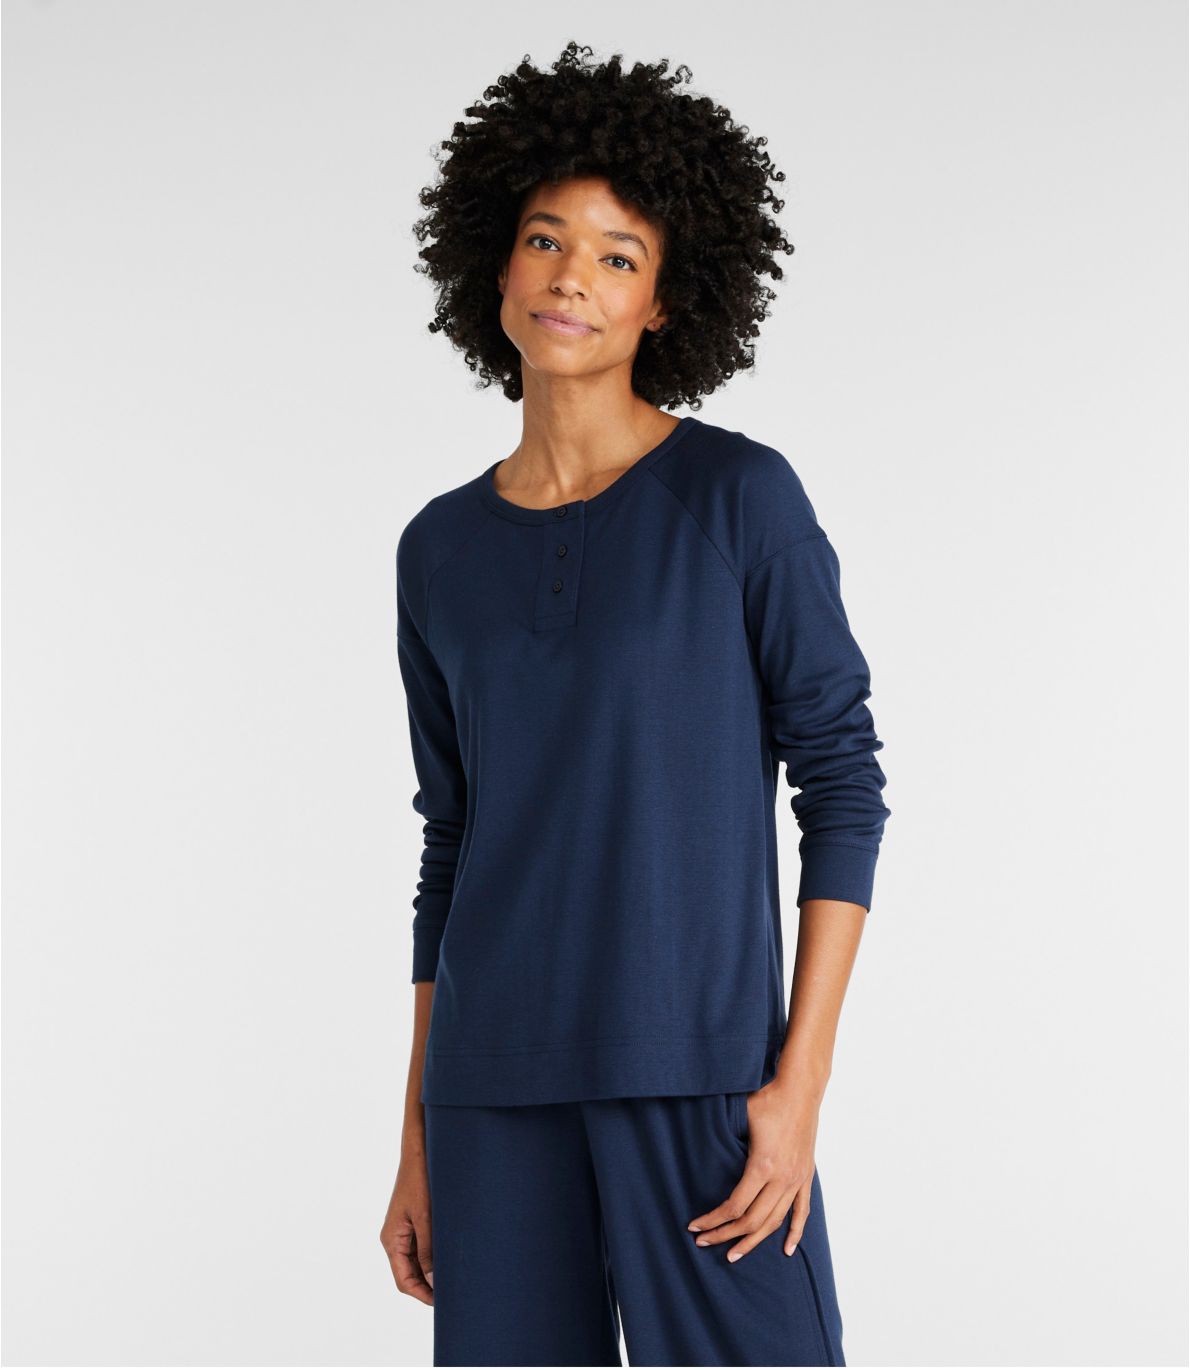 Women's Restorative Sleepwear, Long-Sleeve Henley